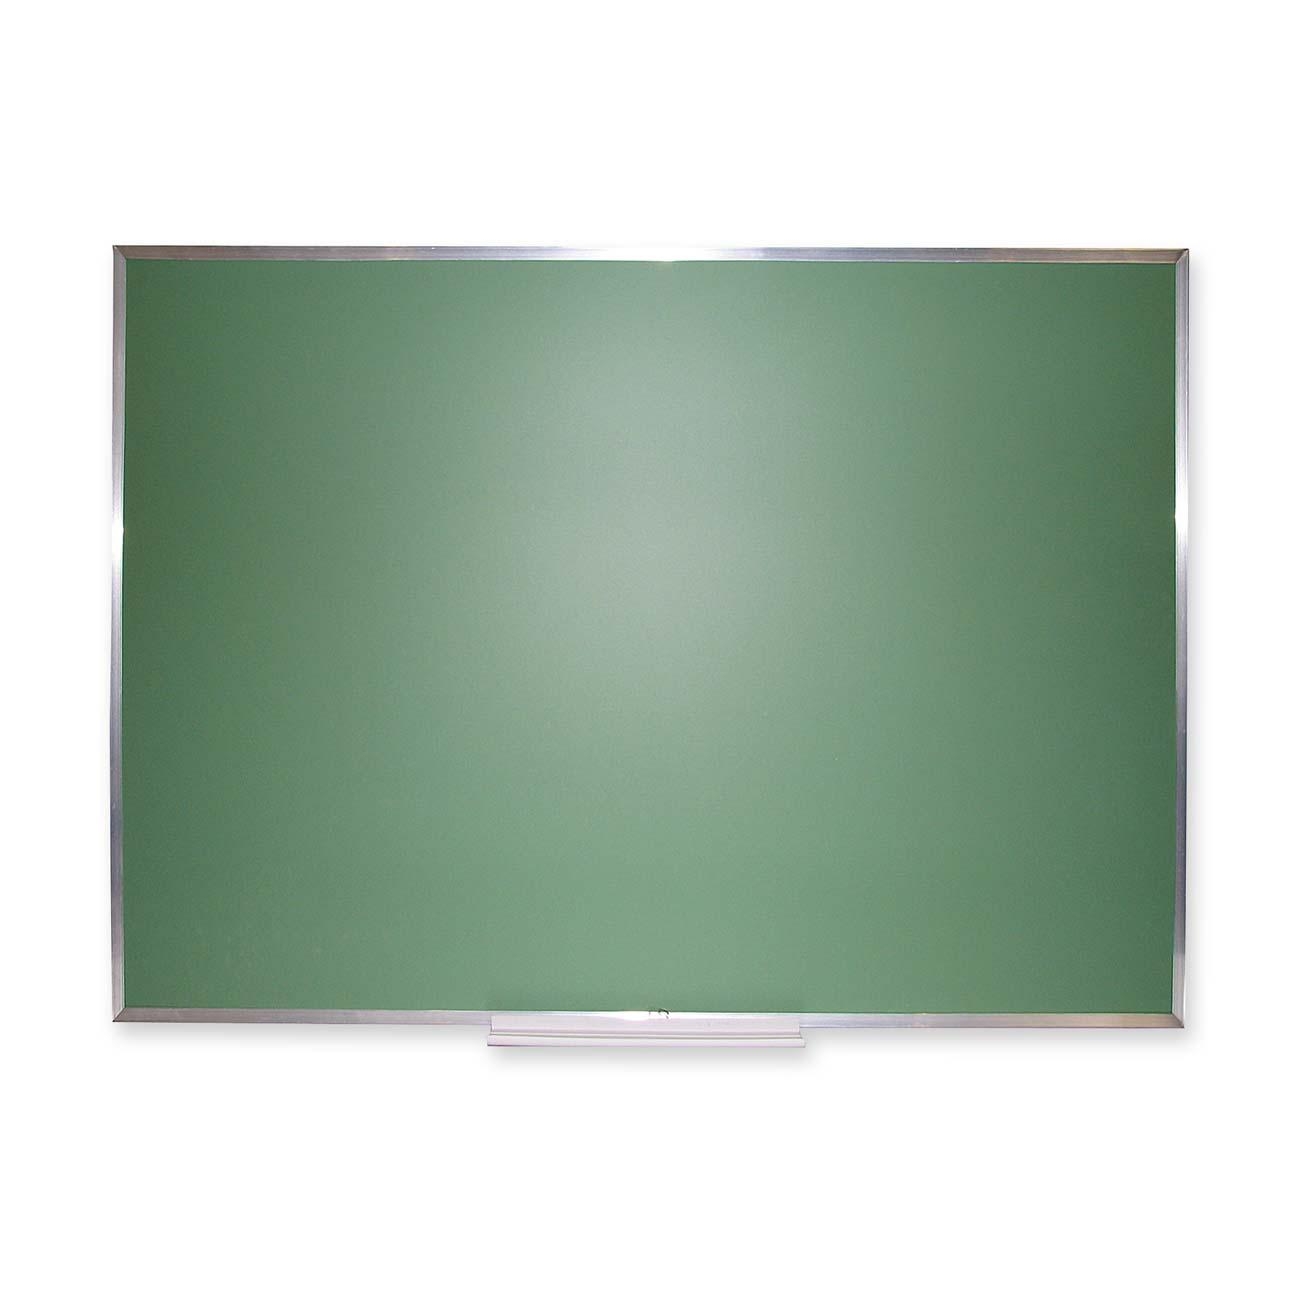 Chalkboard Green - ClipArt Best